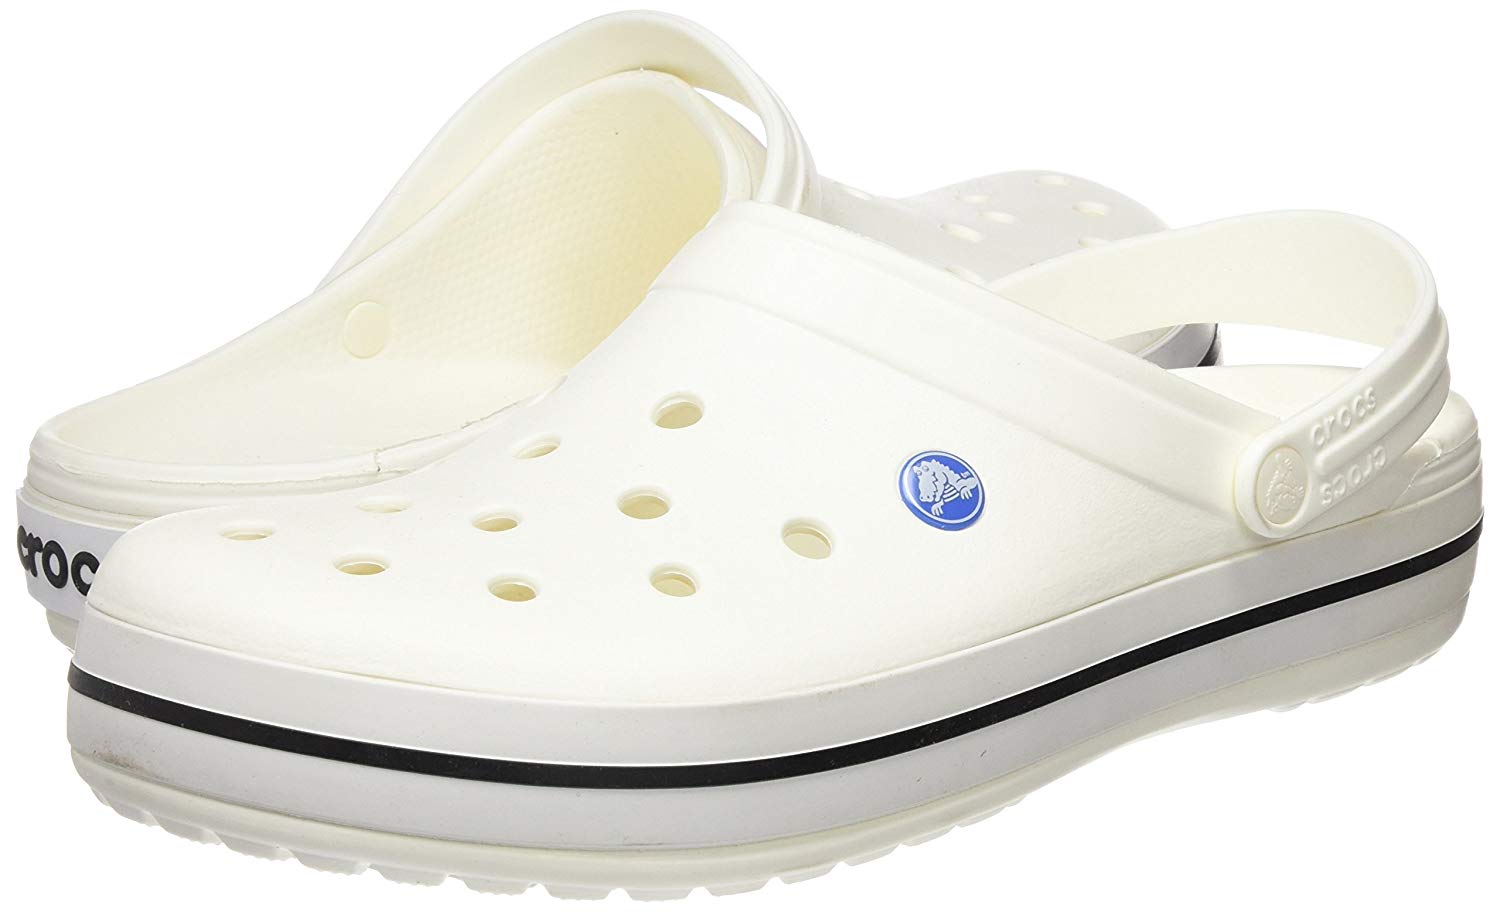 crocs women's walking shoes